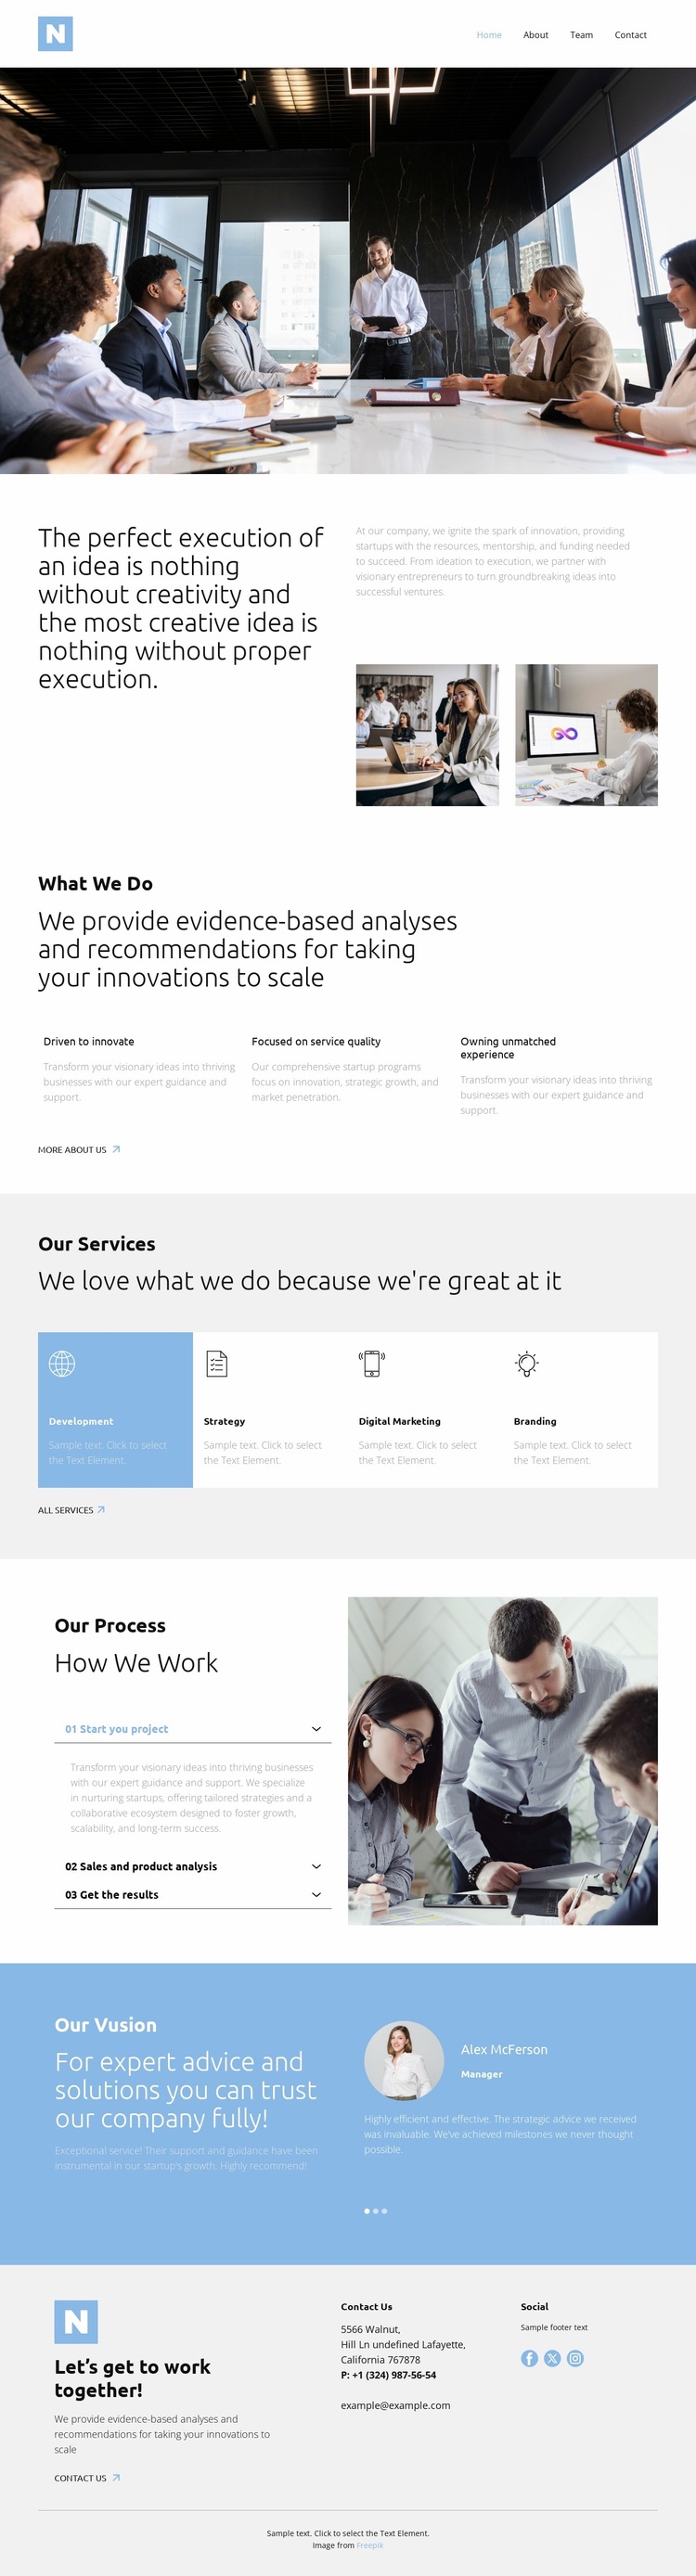 One-stop tech partner Website Design